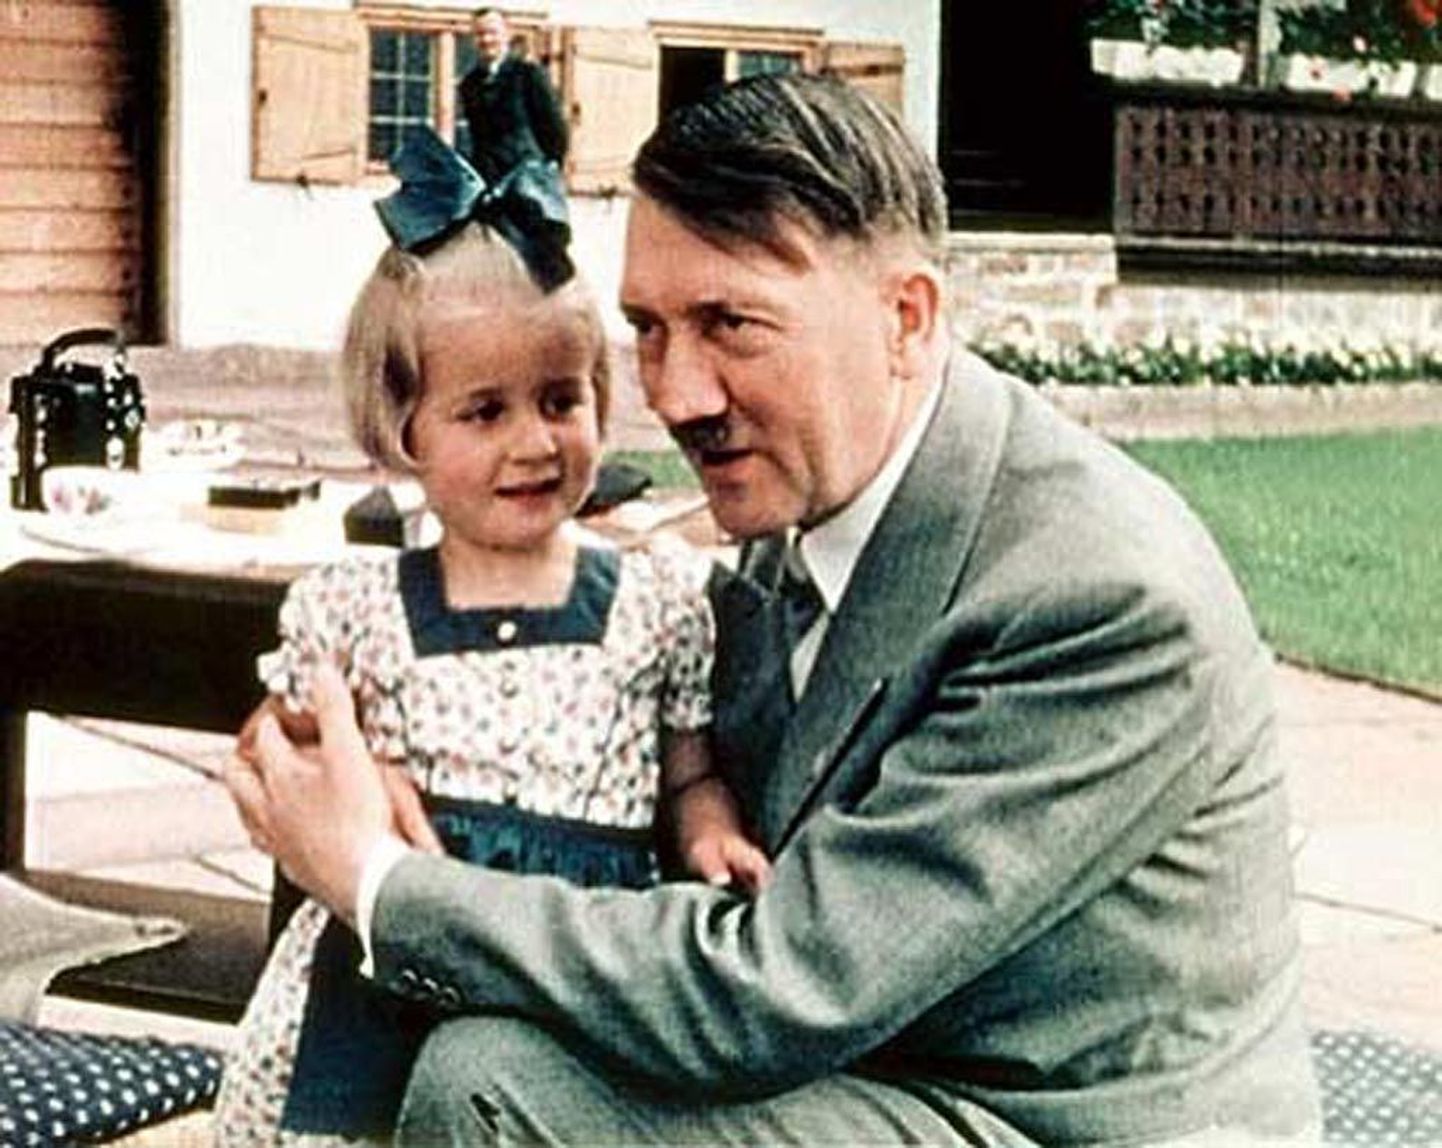 Keskraamatukogus näeb dokumentaalfilmi "Hitleri lapsed".